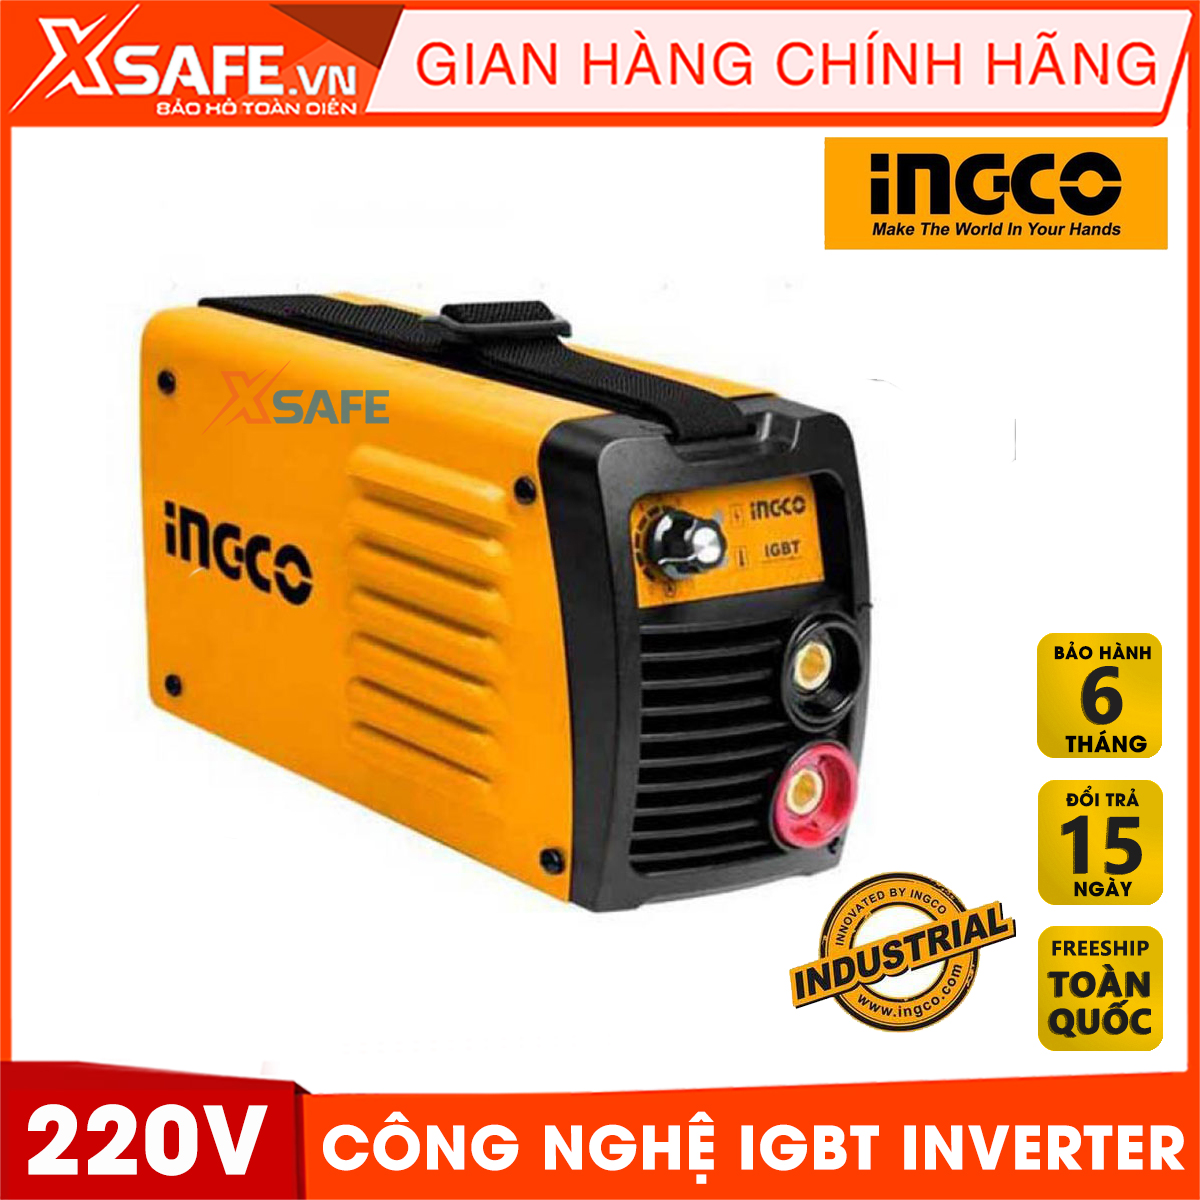 Máy hàn điện tử INGCO ING- MMA1805 sử dụng công nghệ IGBT Inverter. Máy hàn điện tử Ingco hoạt động mạnh mẽ, hiệu suất cao Dễ điều khiển và kiểm soát,    -  [CHÍNH HÃNG][XSAFE]